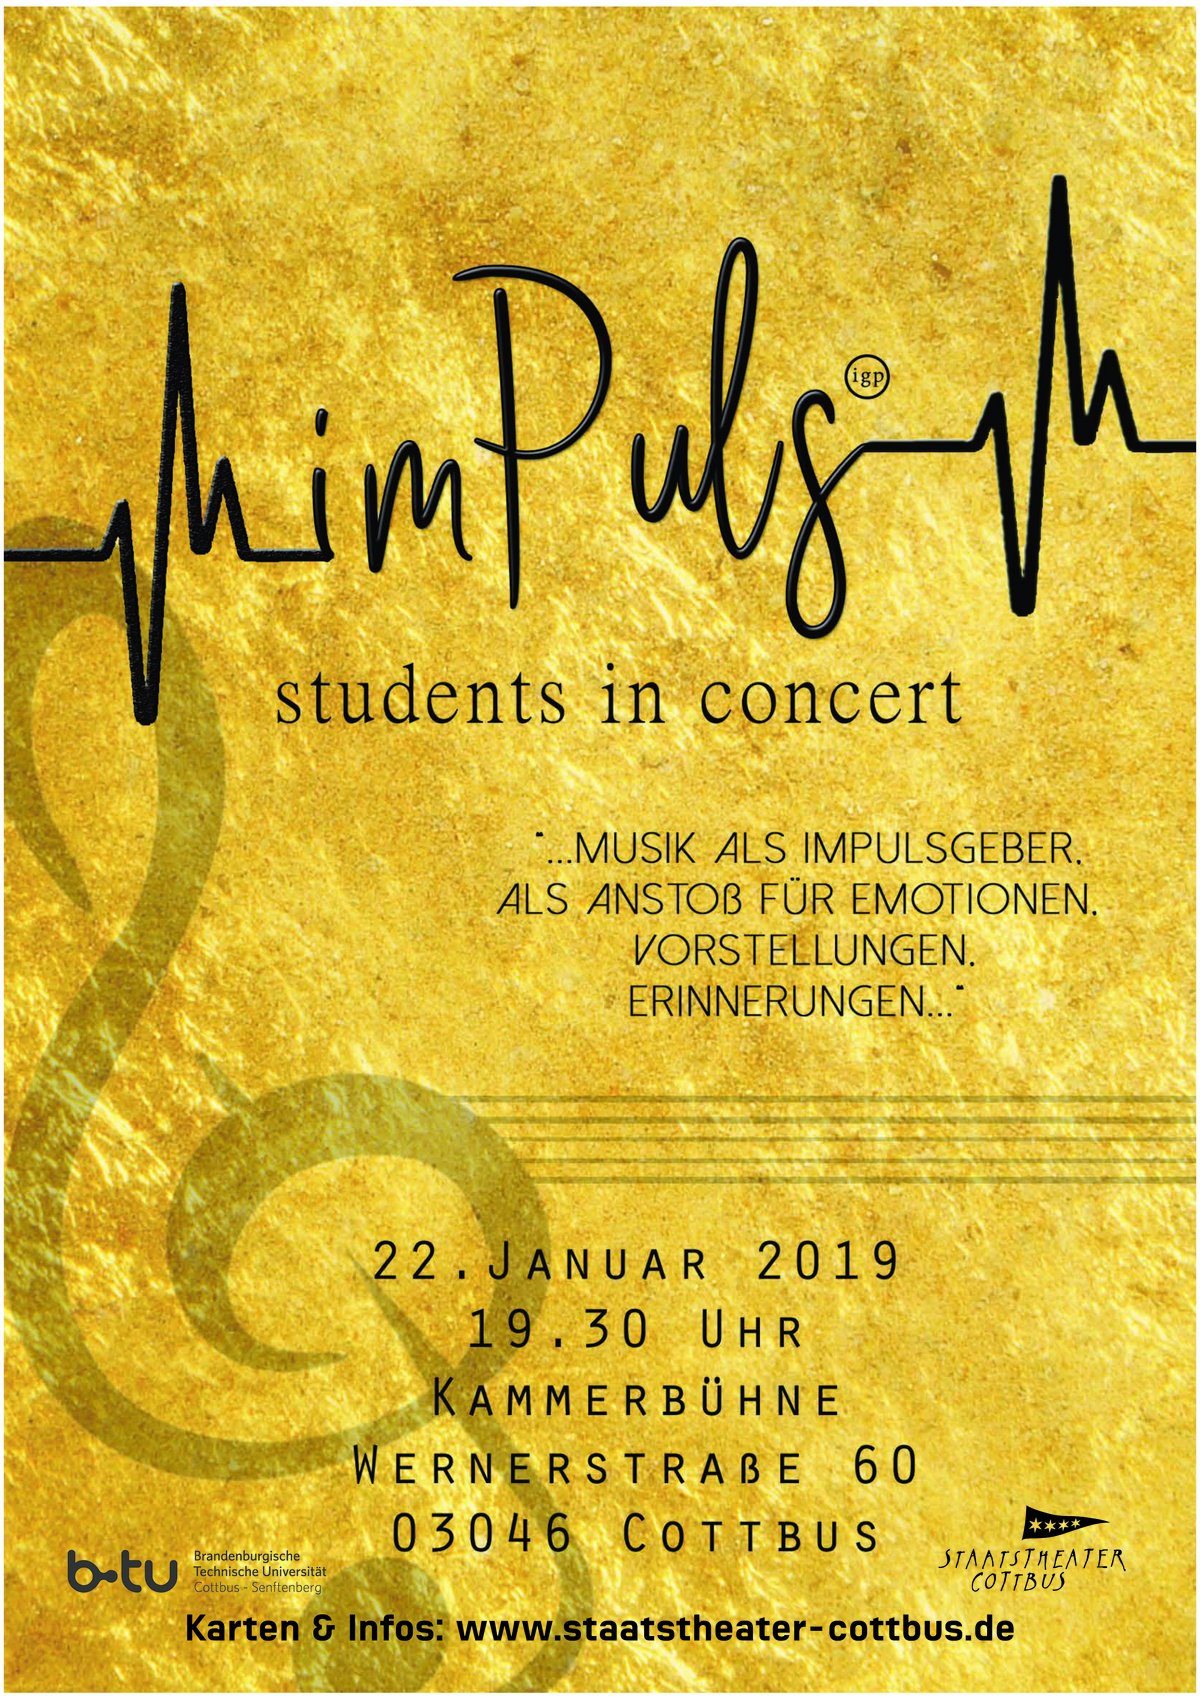 Plakat mit Informationen zum Konzert